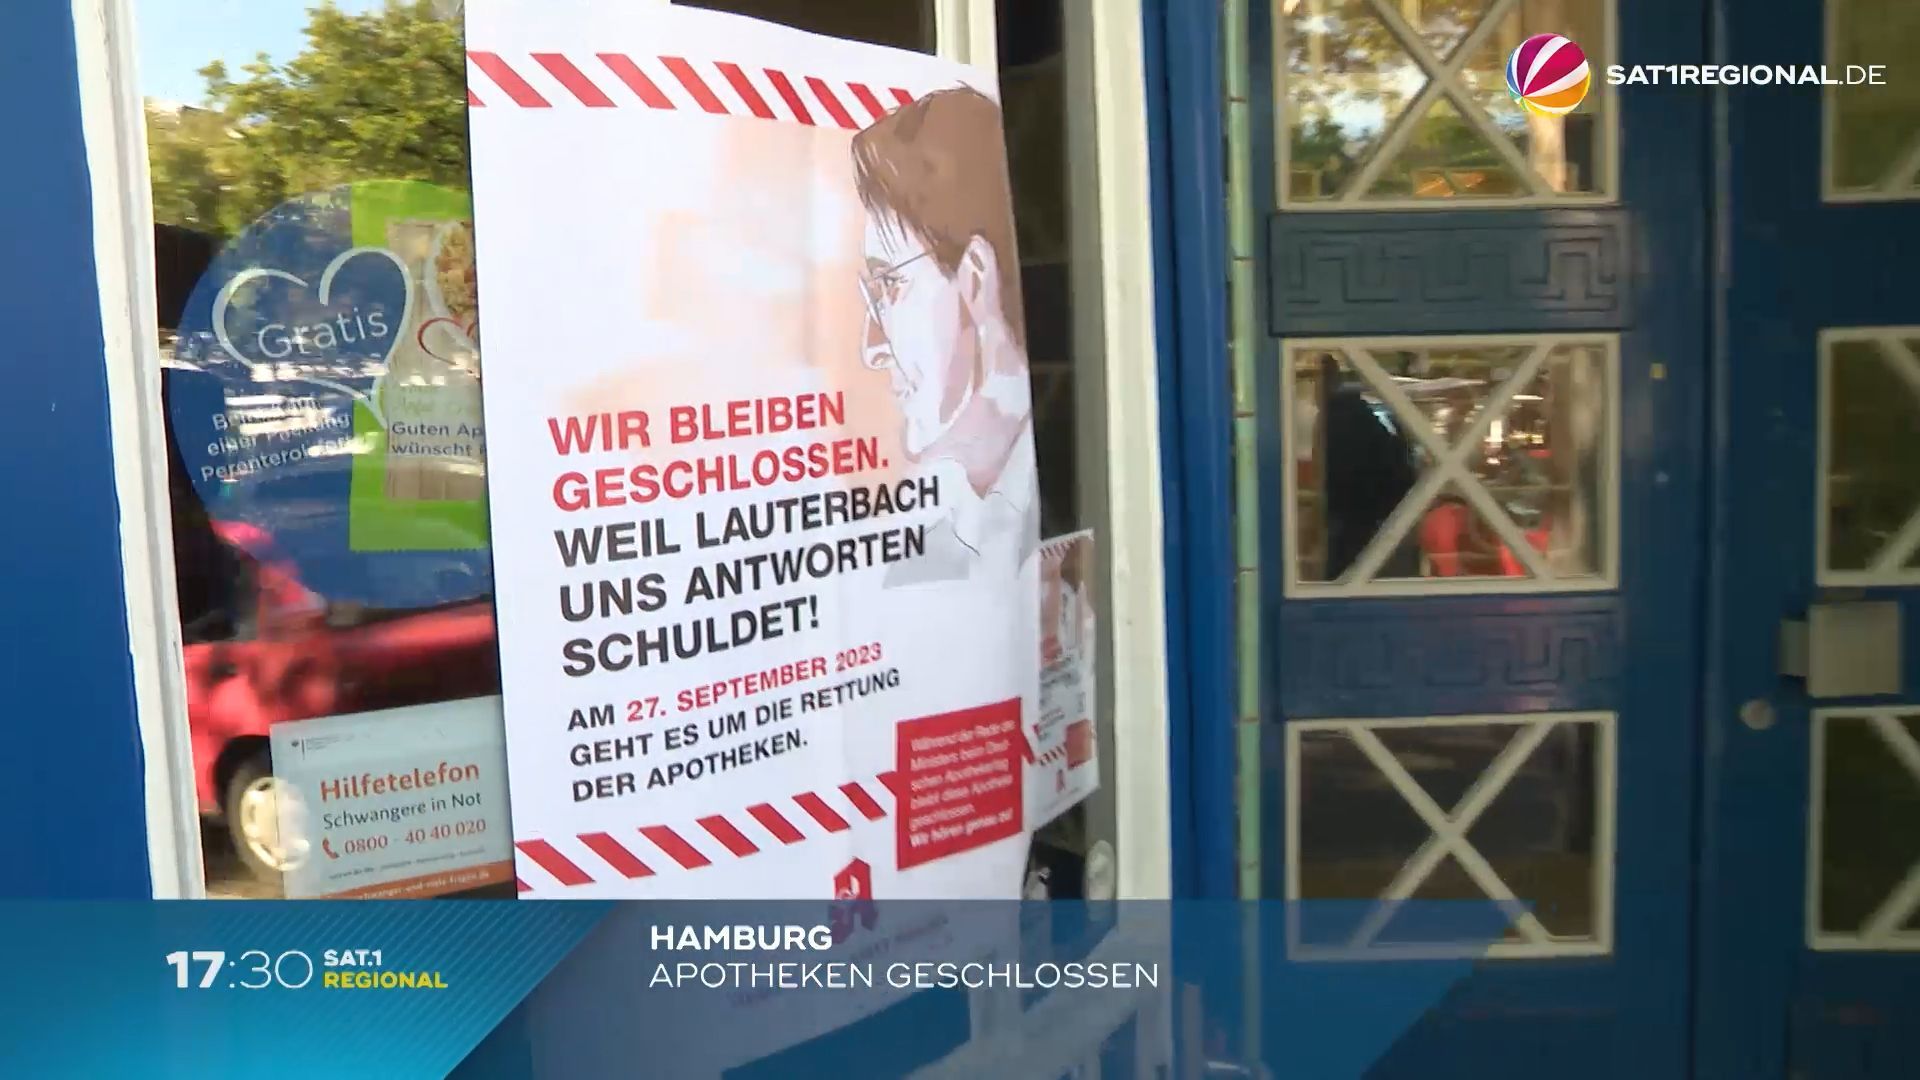 Protesta contra la política sanitaria: Las farmacias de Hamburgo cierran temporalmente